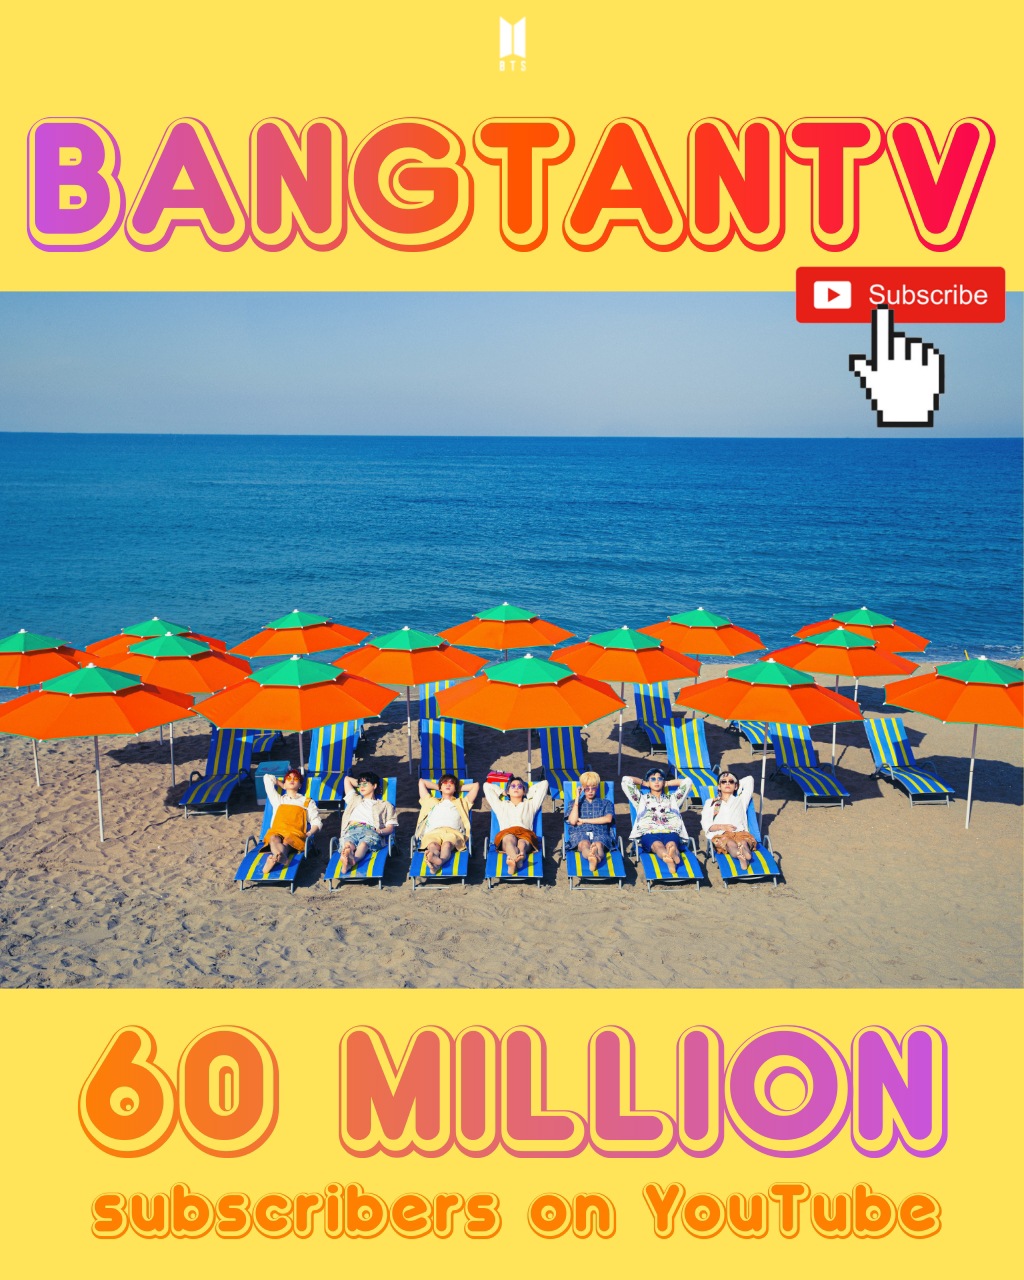 ช่อง “BANGTANTV” มียอดกด subscribers ทะลุ 60 ล้านบน YouTube !